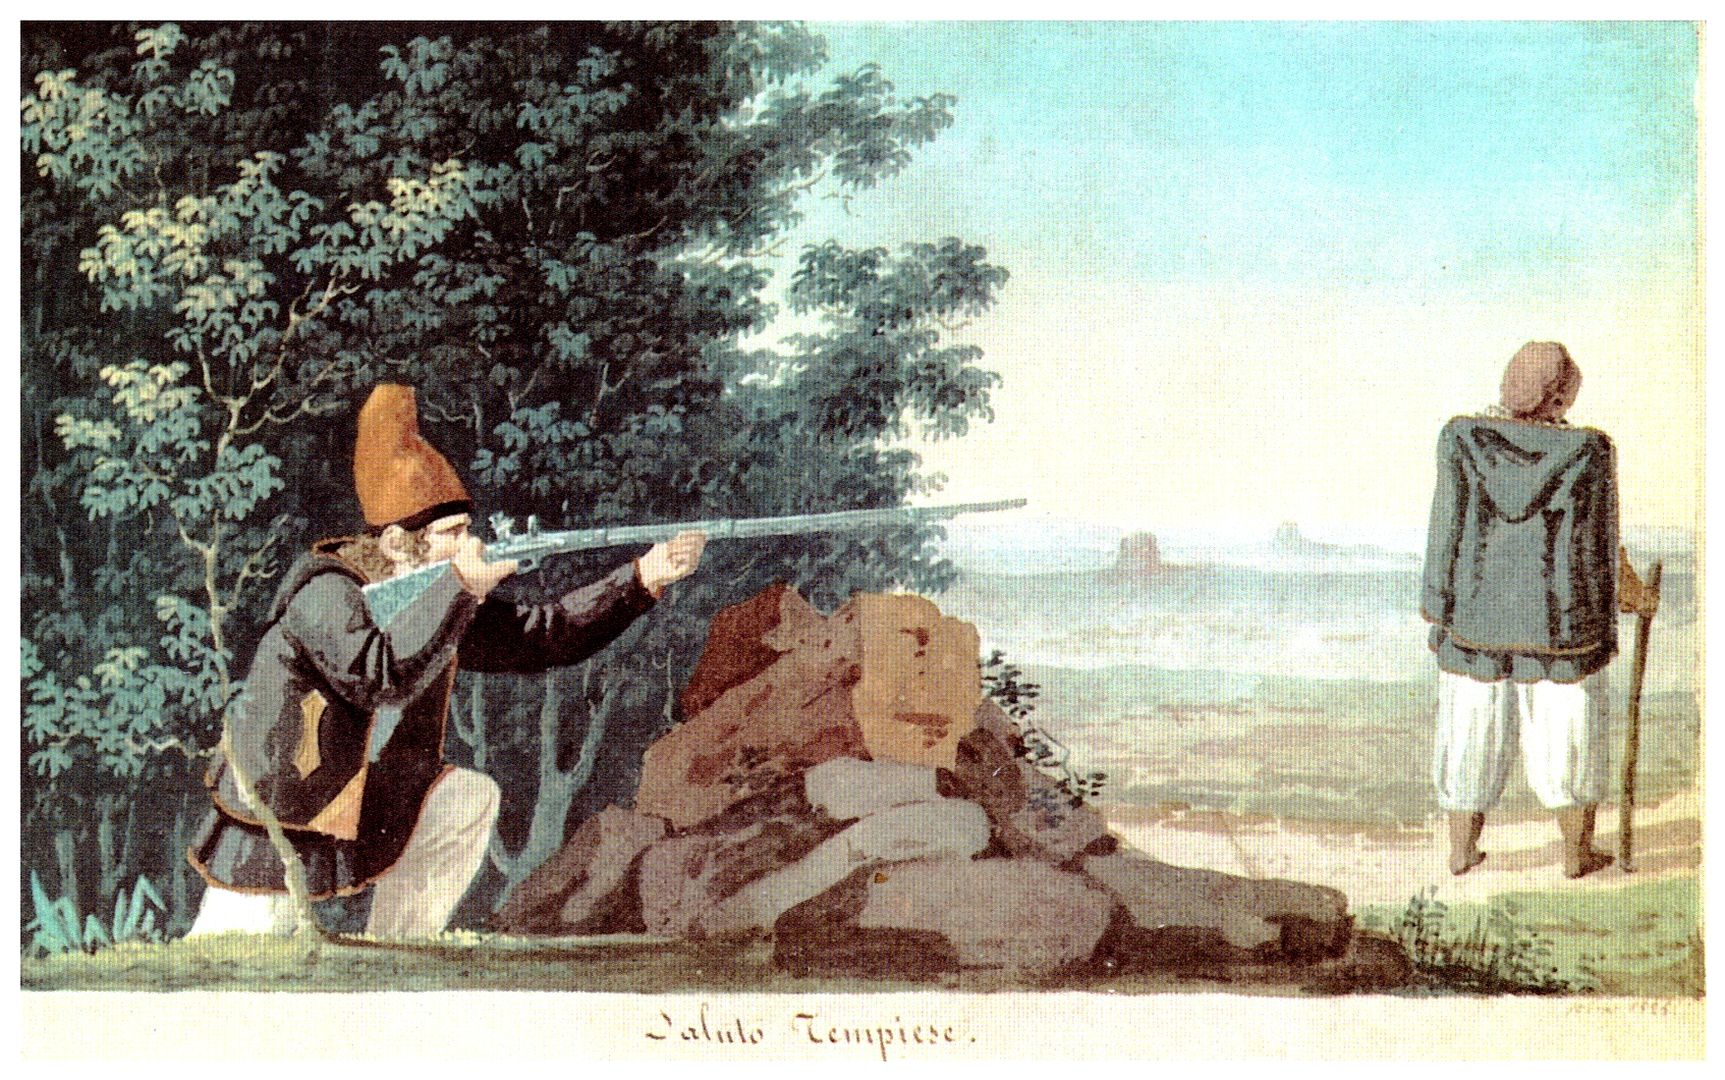 Giuseppe Cominotti - Tempiese greeting, 1825